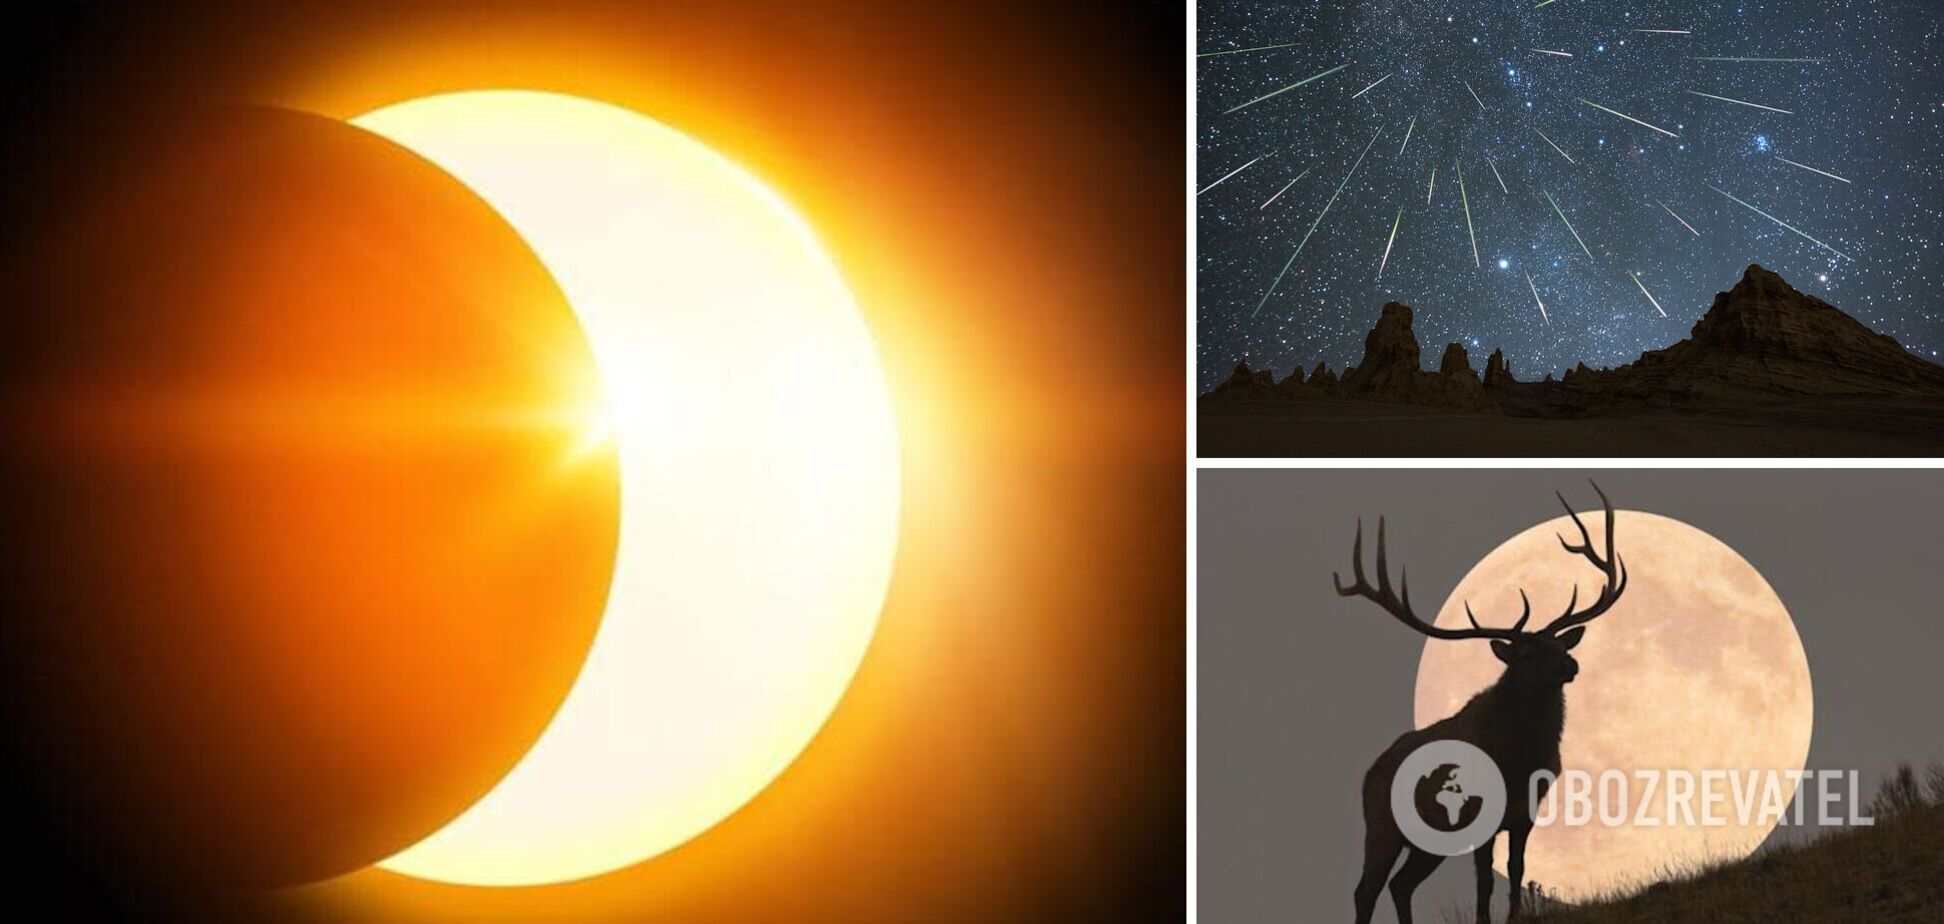 Часткове затемнення Сонця та метеоритні дощі: що спостерігати на небі у жовтні 2022 року